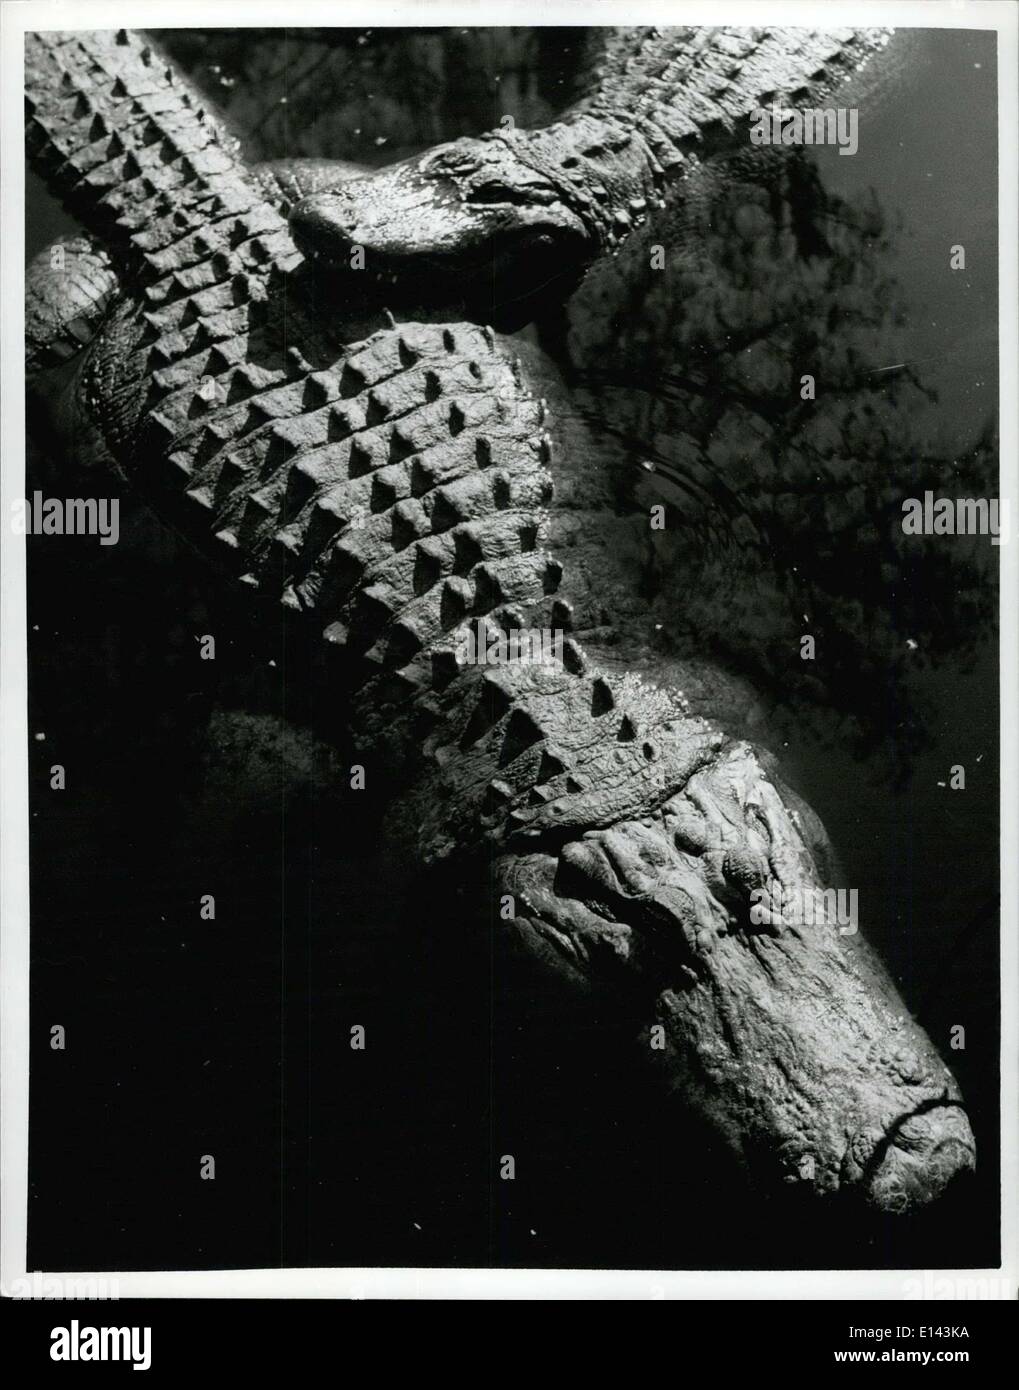 Avril 04, 2012 - La Floride : Alligator l'alligator est probablement la victime de plus d'imagination et de connaissances moins réel que n'importe quel autre membre de Florida's wild kingdom. Dans les Everglades de Floride, où une différence de quelques pouces dans le tableau de l'eau signifie une mort certaine pour une grande partie de la flore des sous-bois et de la faune, le Gator est un défenseur plus efficace. Le reptile creuse grands trous qui atteignent jusqu'à l'eau table, même pendant la saison sèche, en fournissant une alimentation en eau d'oiseaux, de poissons et autres créatures Everglades Banque D'Images